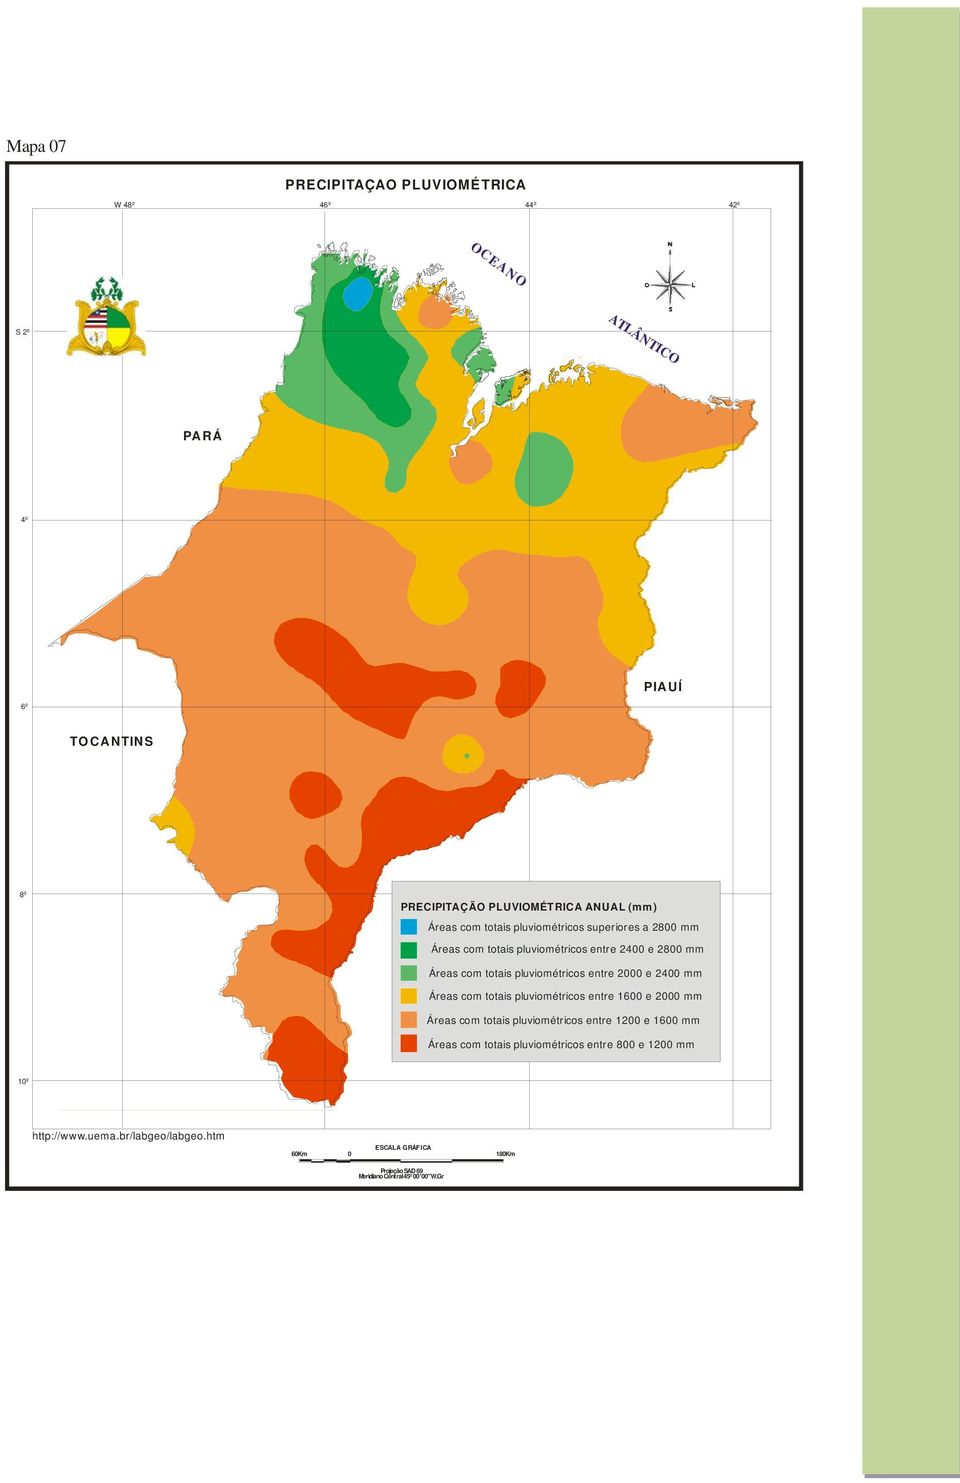 Áreas com totais pluviométricos entre 1600 e 2000 mm Áreas com totais pluviométricos entre 1200 e 1600 mm Áreas com totais